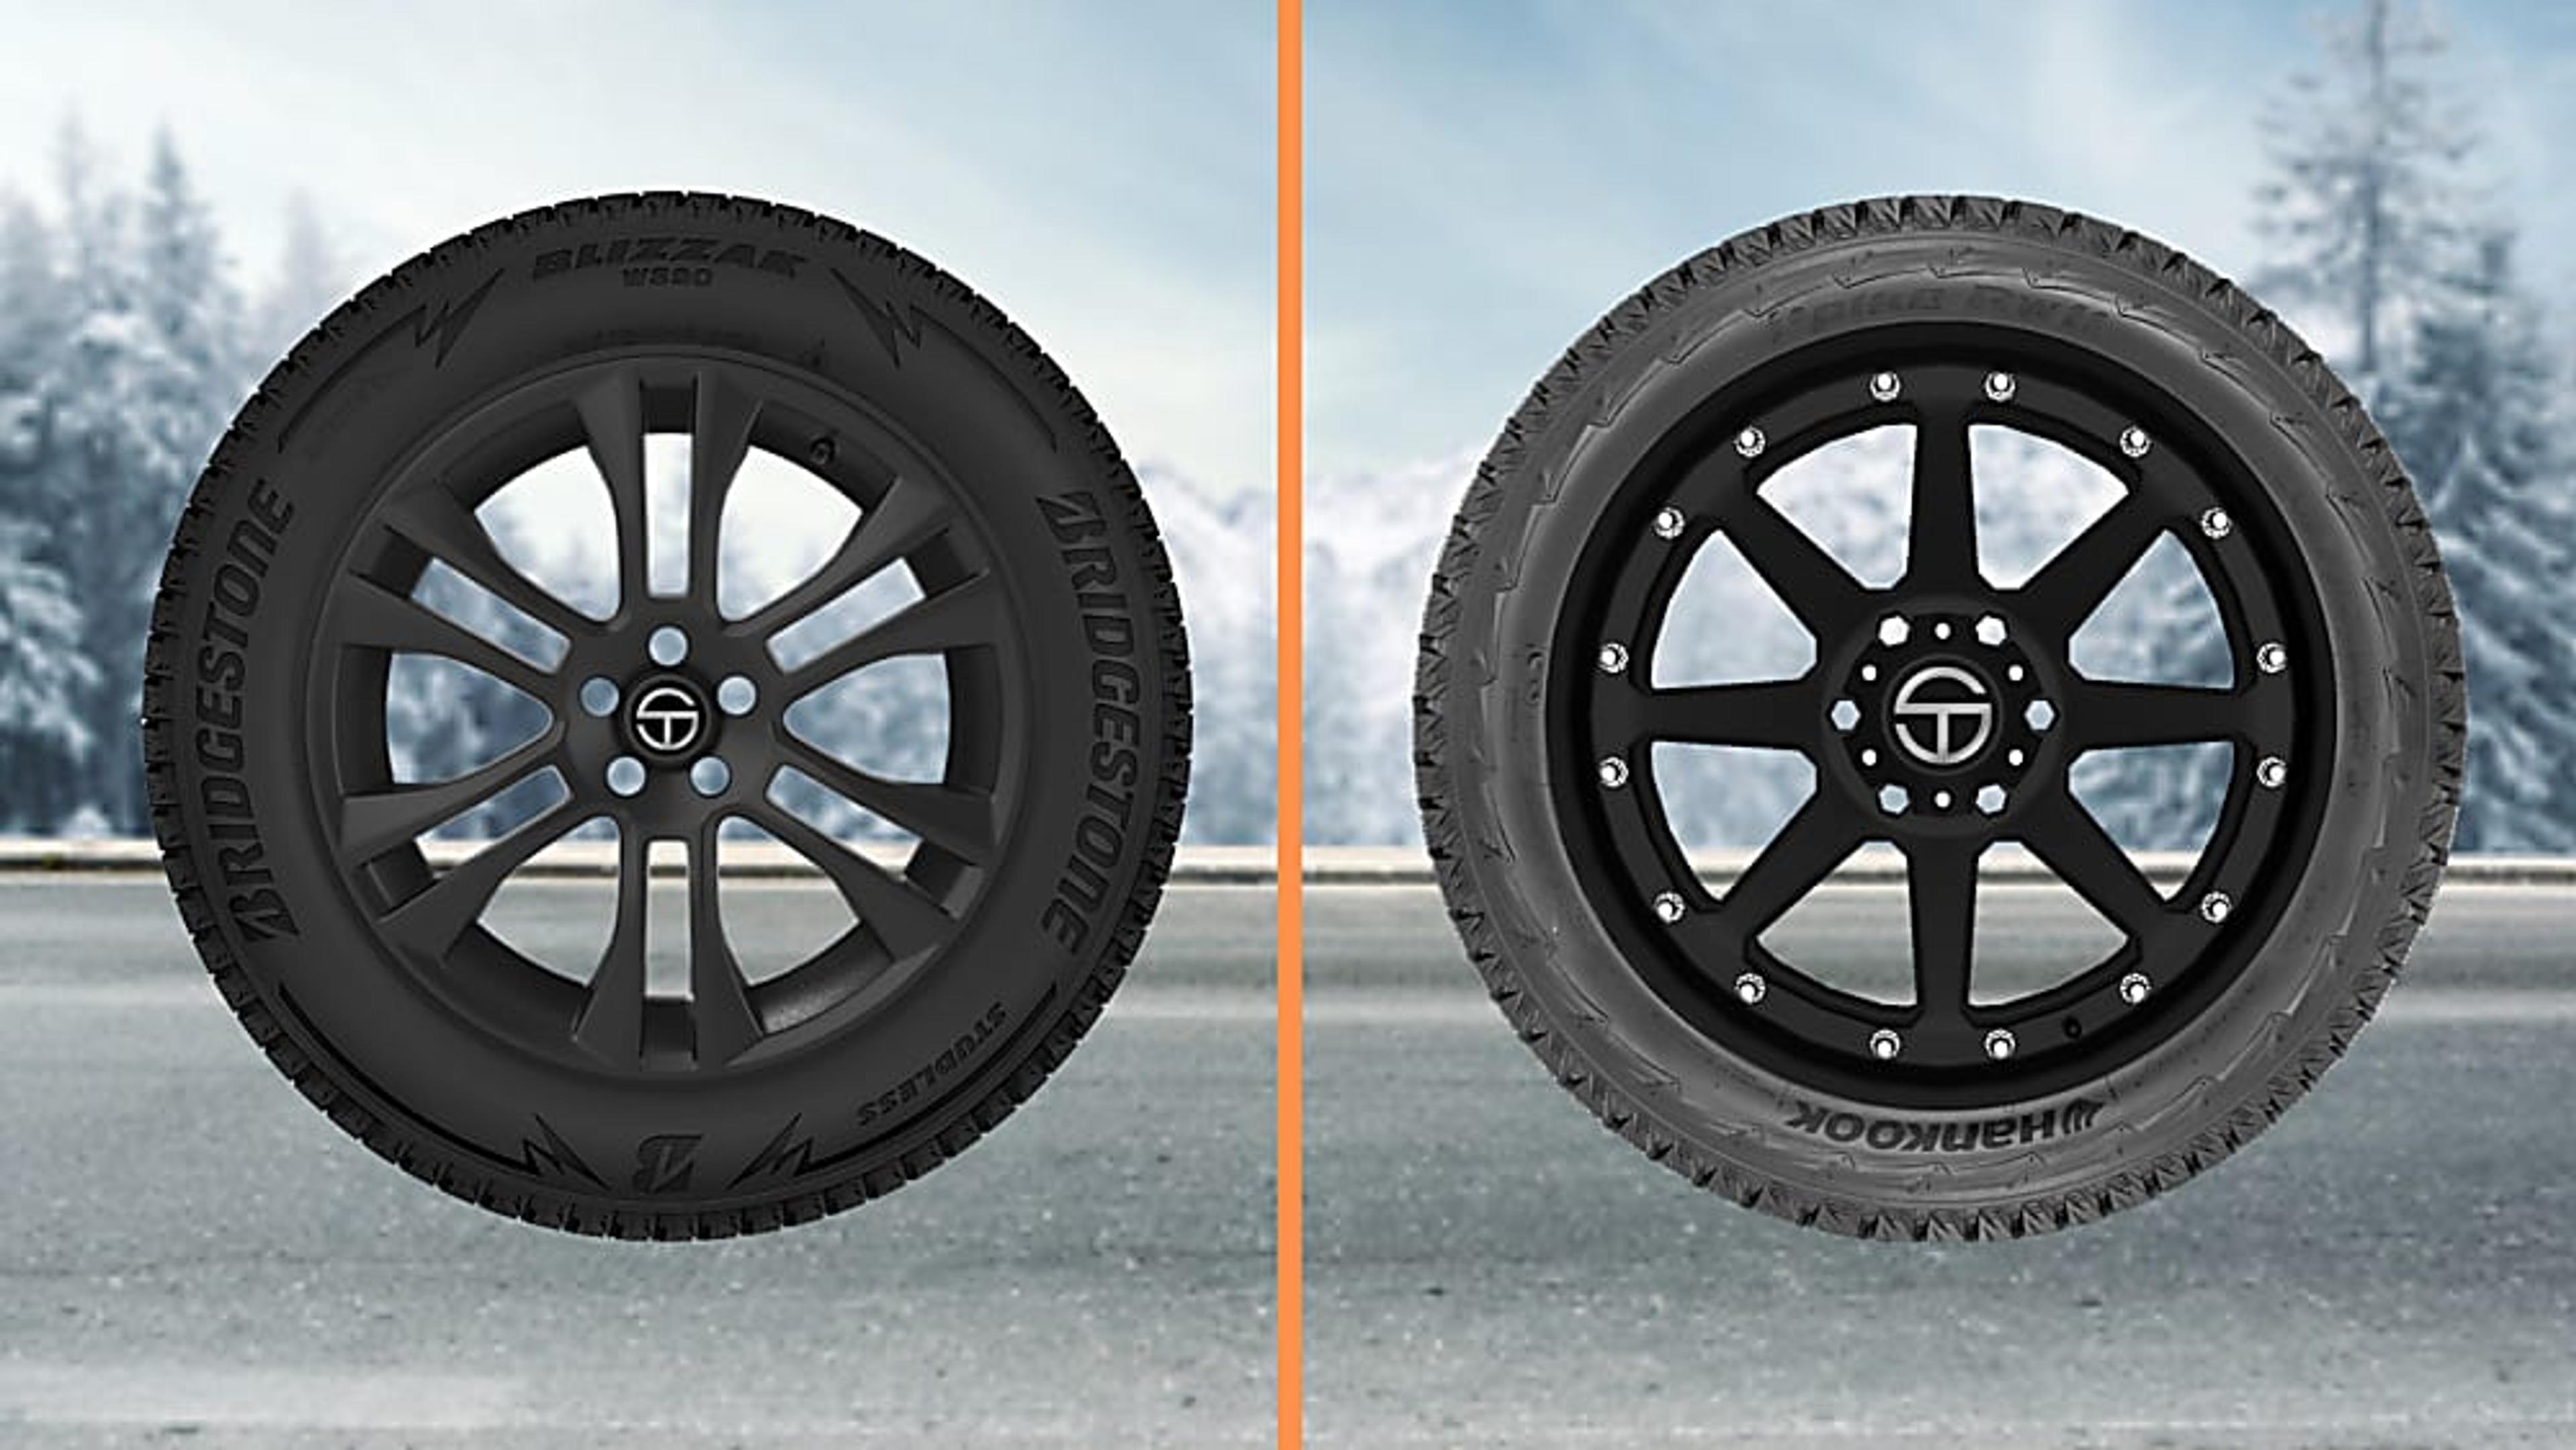 SimpleTire compares the Bridgestone Blizzak WS90 tire and the Hankook i*Pike RW11 tire.